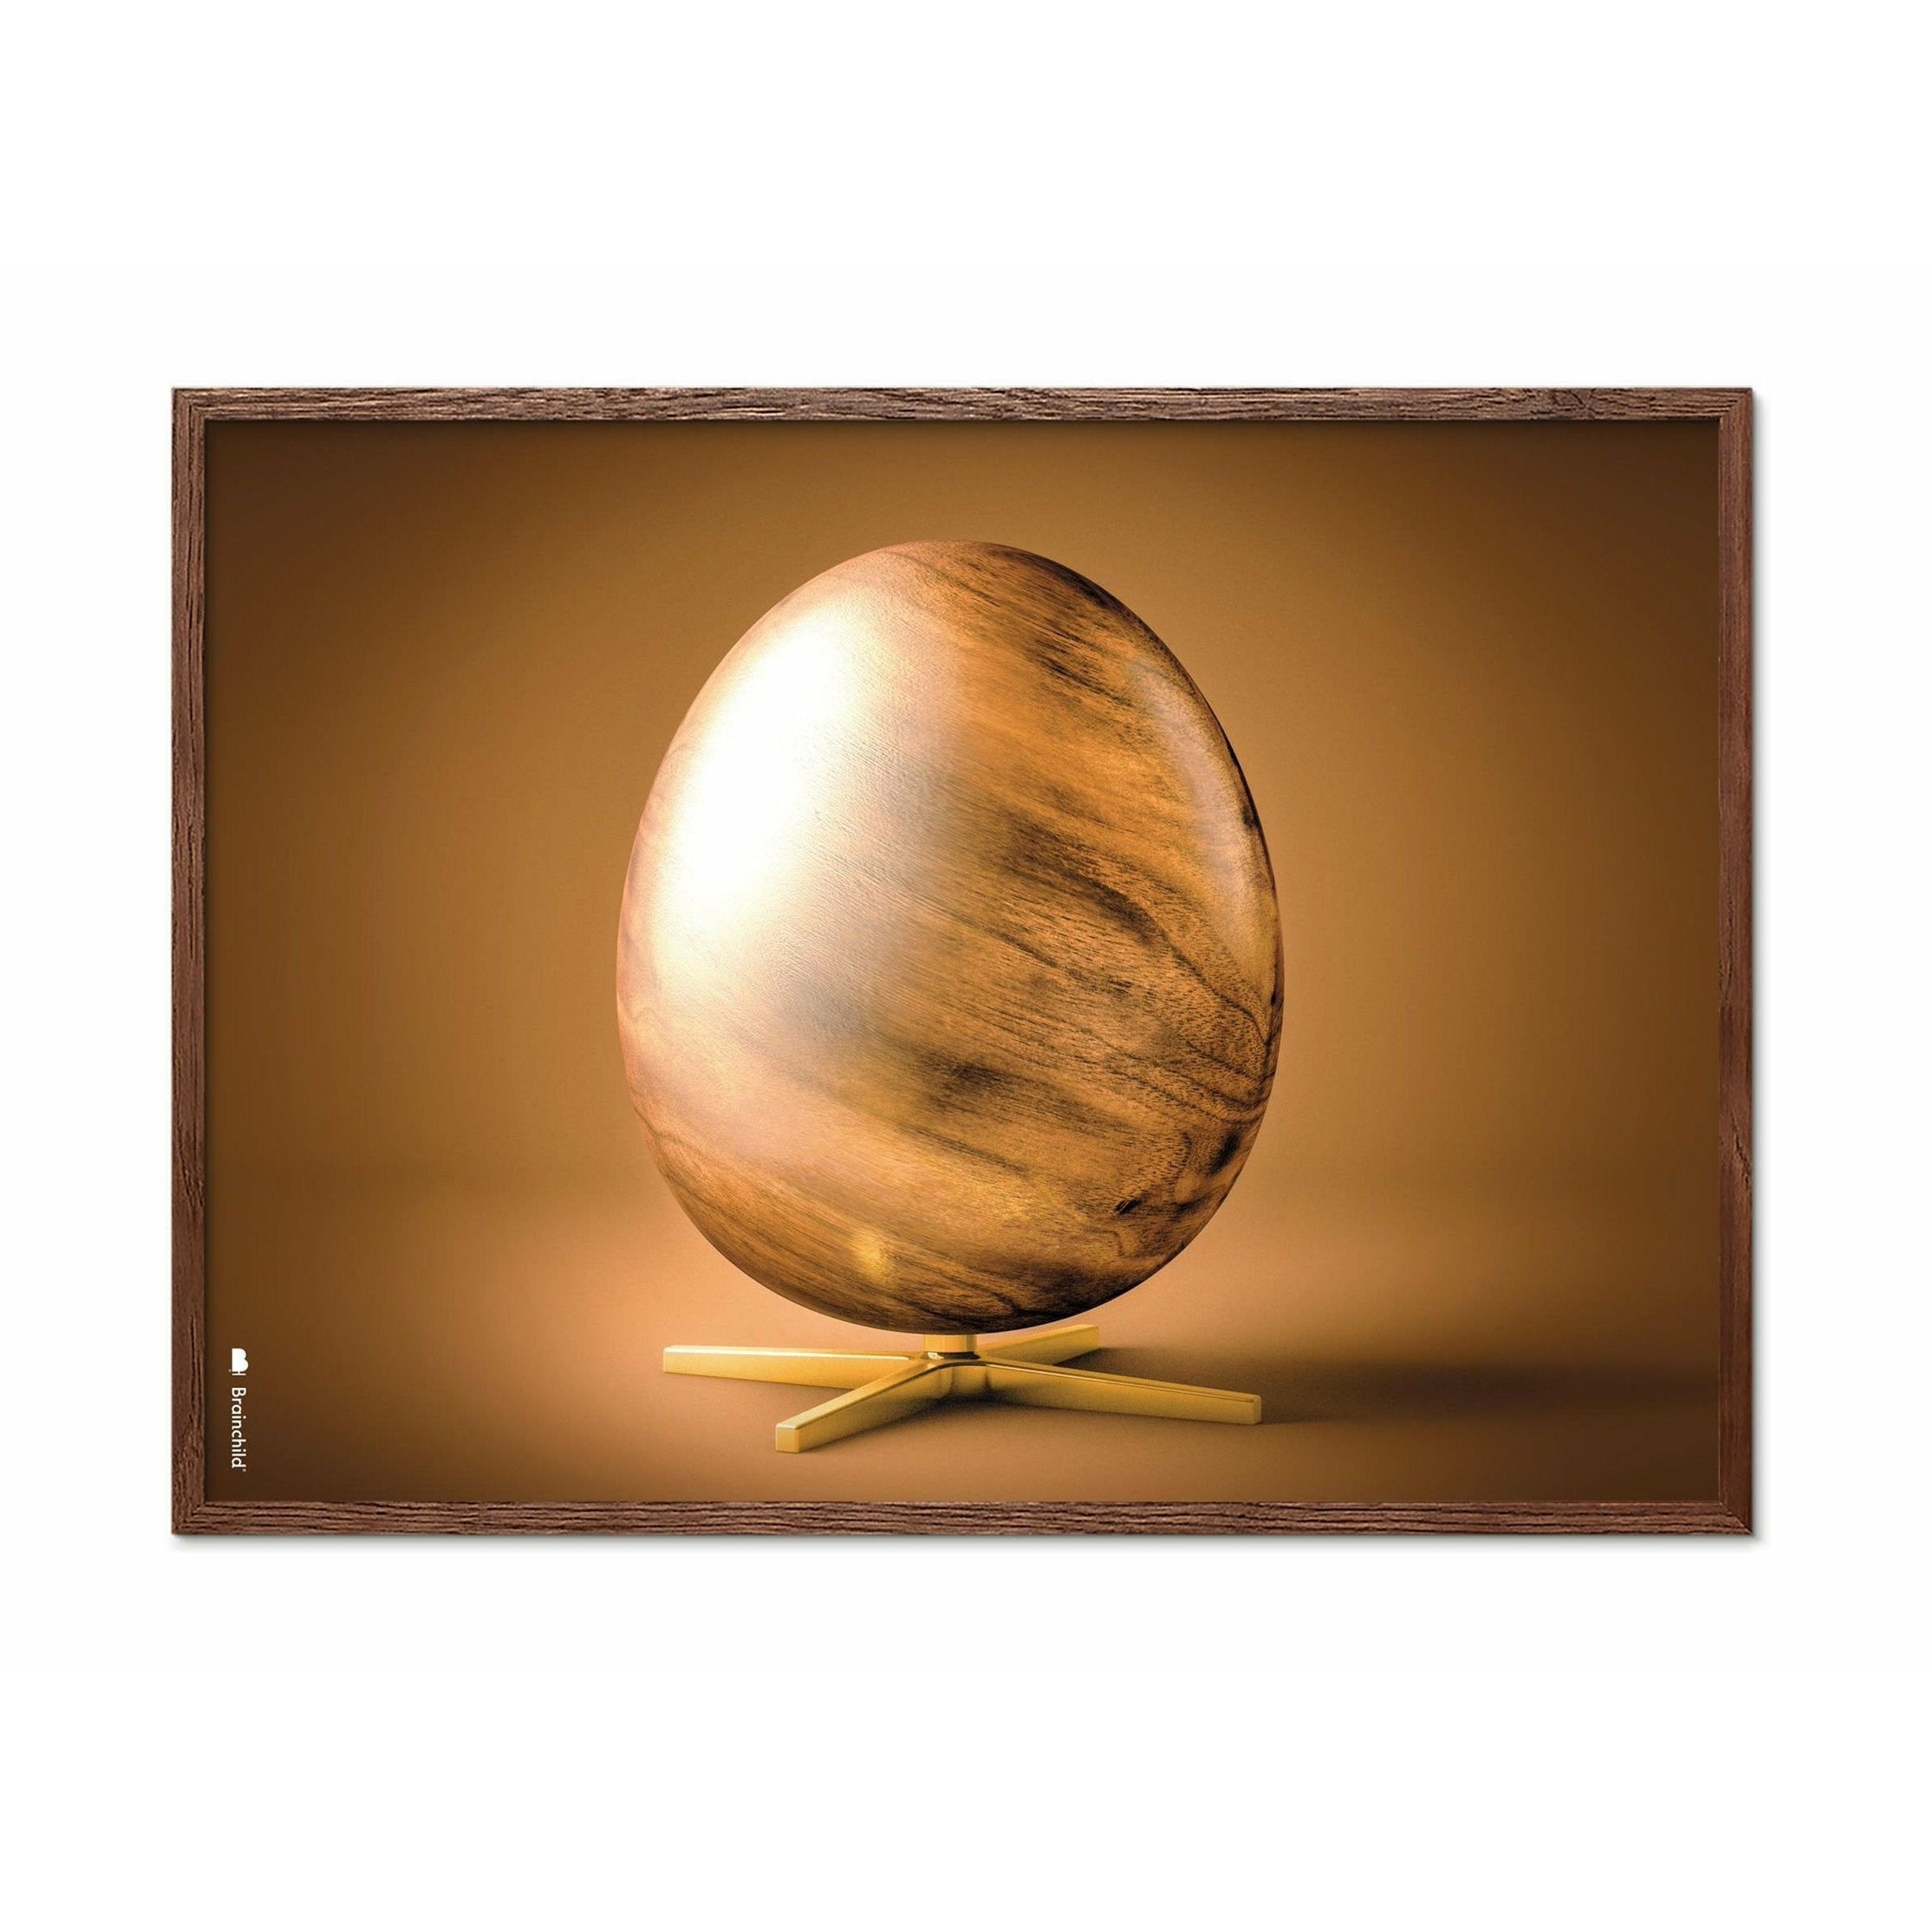 Plakát křížového formátu vajec z mozku, rám vyrobený z tmavého dřeva 30x40 cm, hnědý